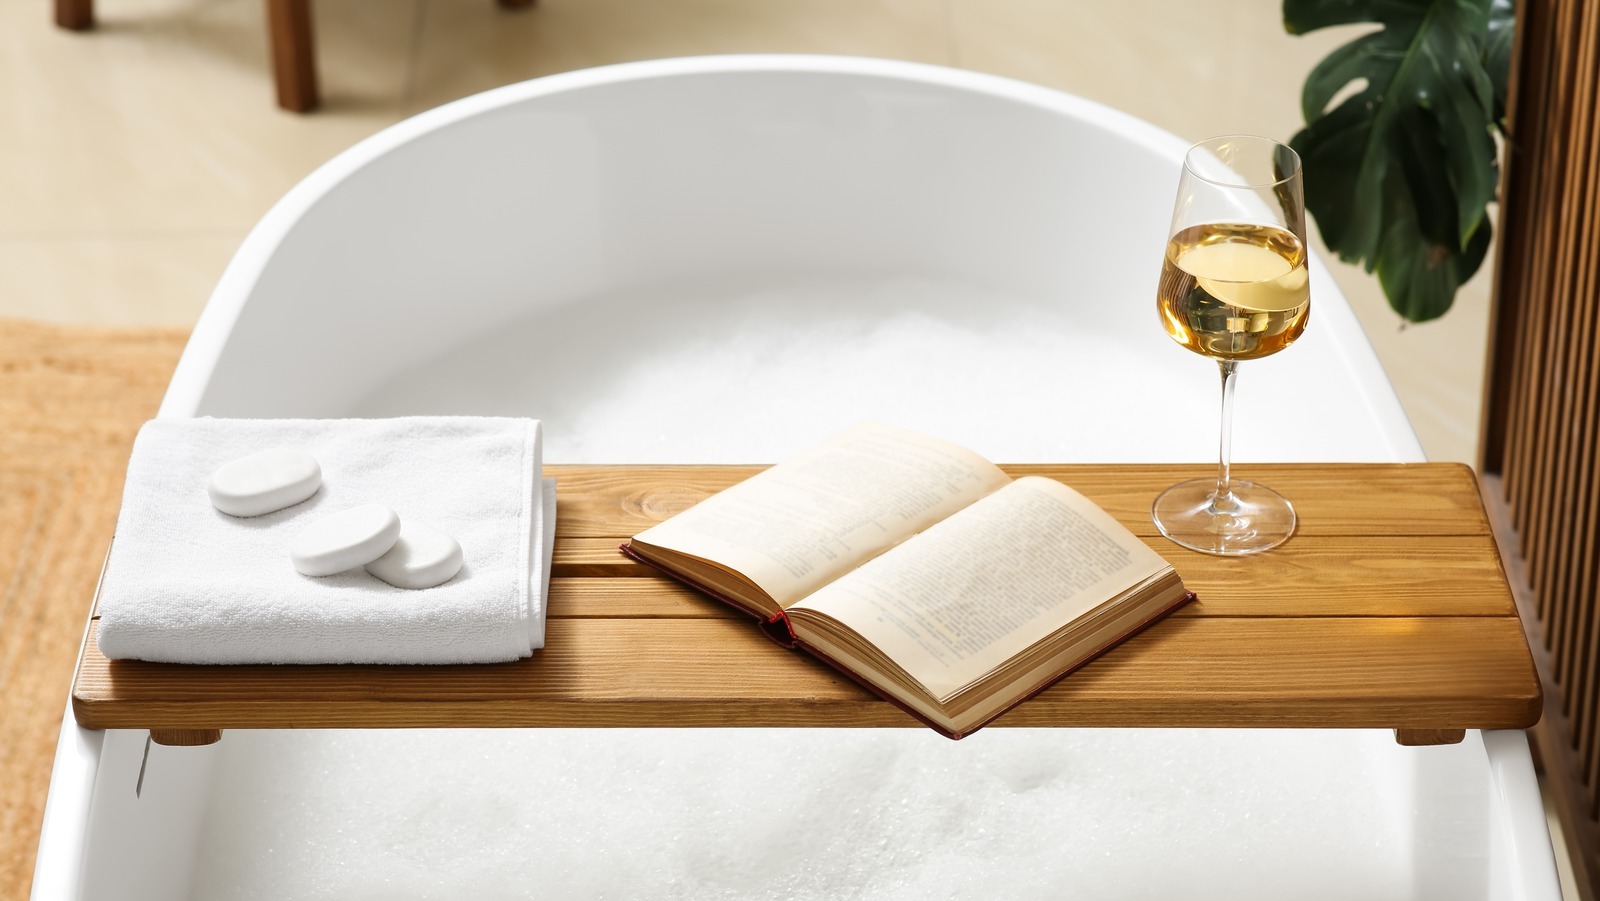 DIY Bathtub Tray: How to Build a Relaxing Bath Caddy